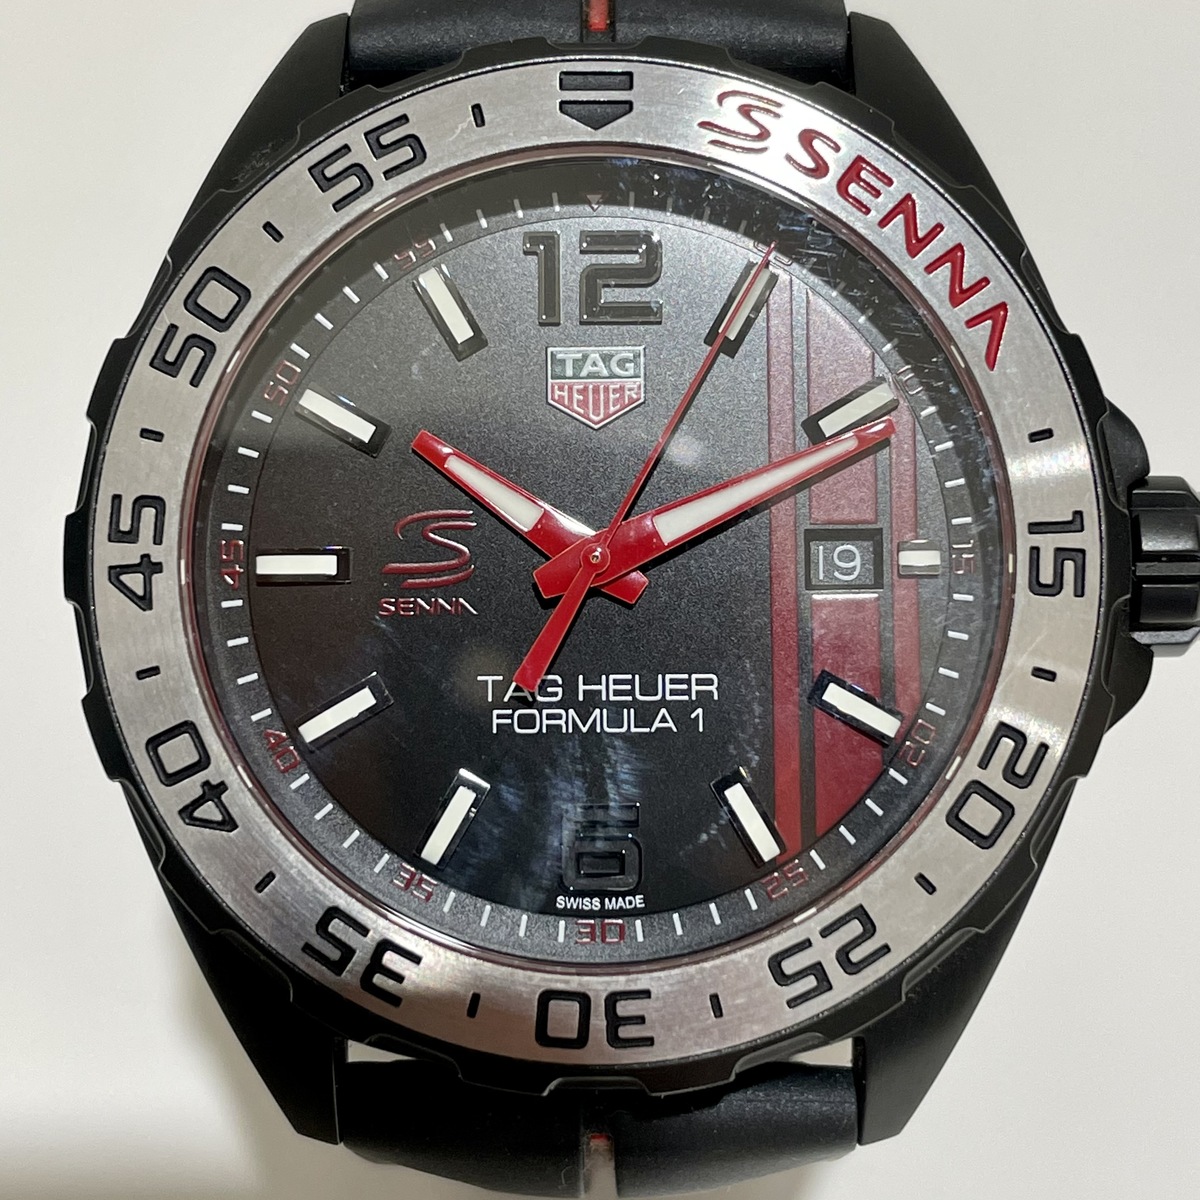 タグホイヤーのブラック WAZ1014.FT8027 S/N:RQP9166 フォーミュラー1 クオーツ時計の買取実績です。